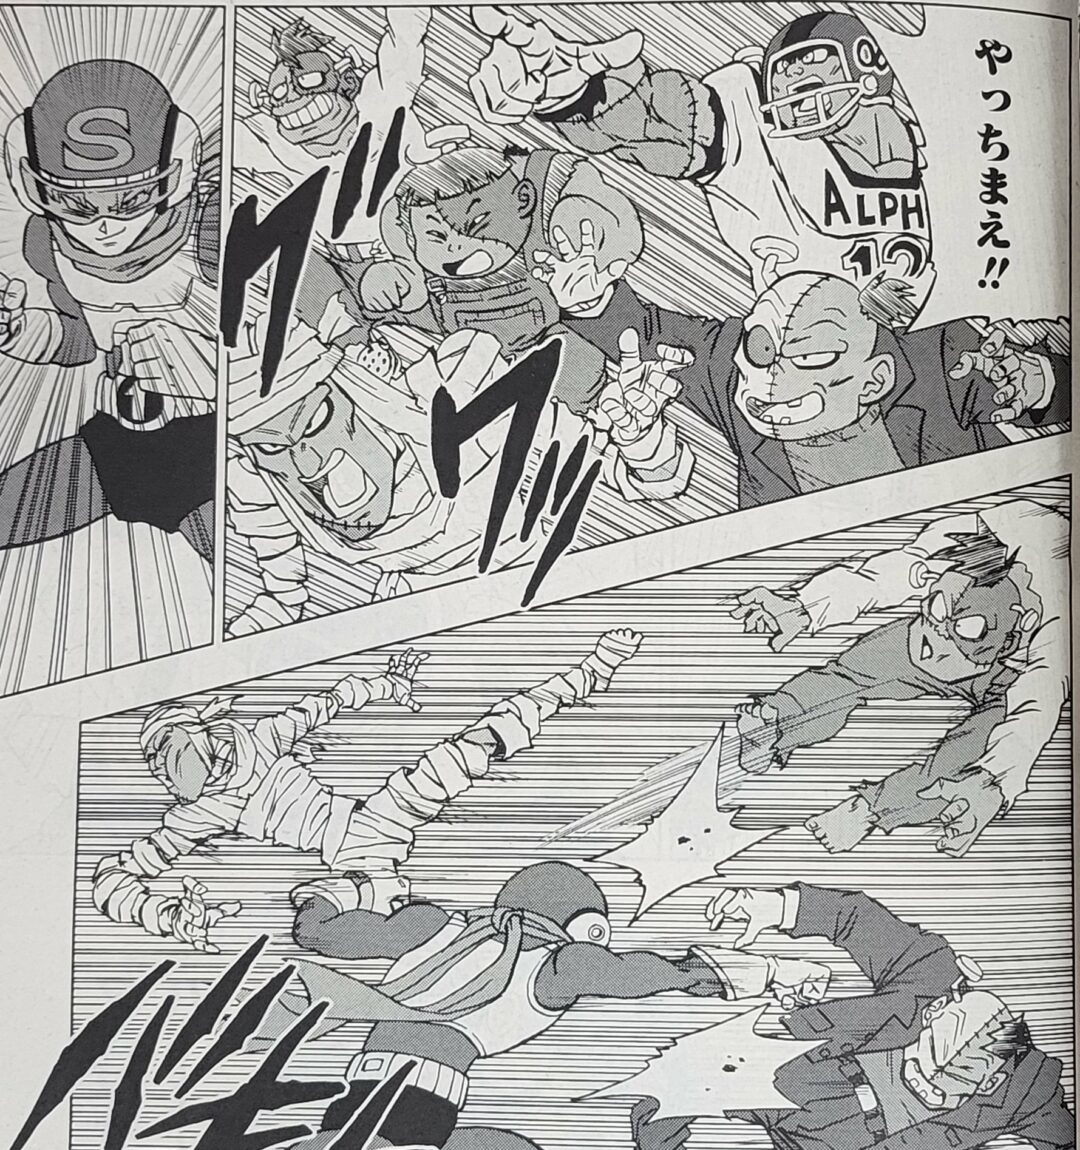 Daiko O Saiyajin on X: AEEE! Primeiros imagens do mangá capítulo 88 de Dragon  Ball Super!! As cores oficiais do Black Freeza, Trunks Super saiyajin e os  zumbis androides do DR Hedo!